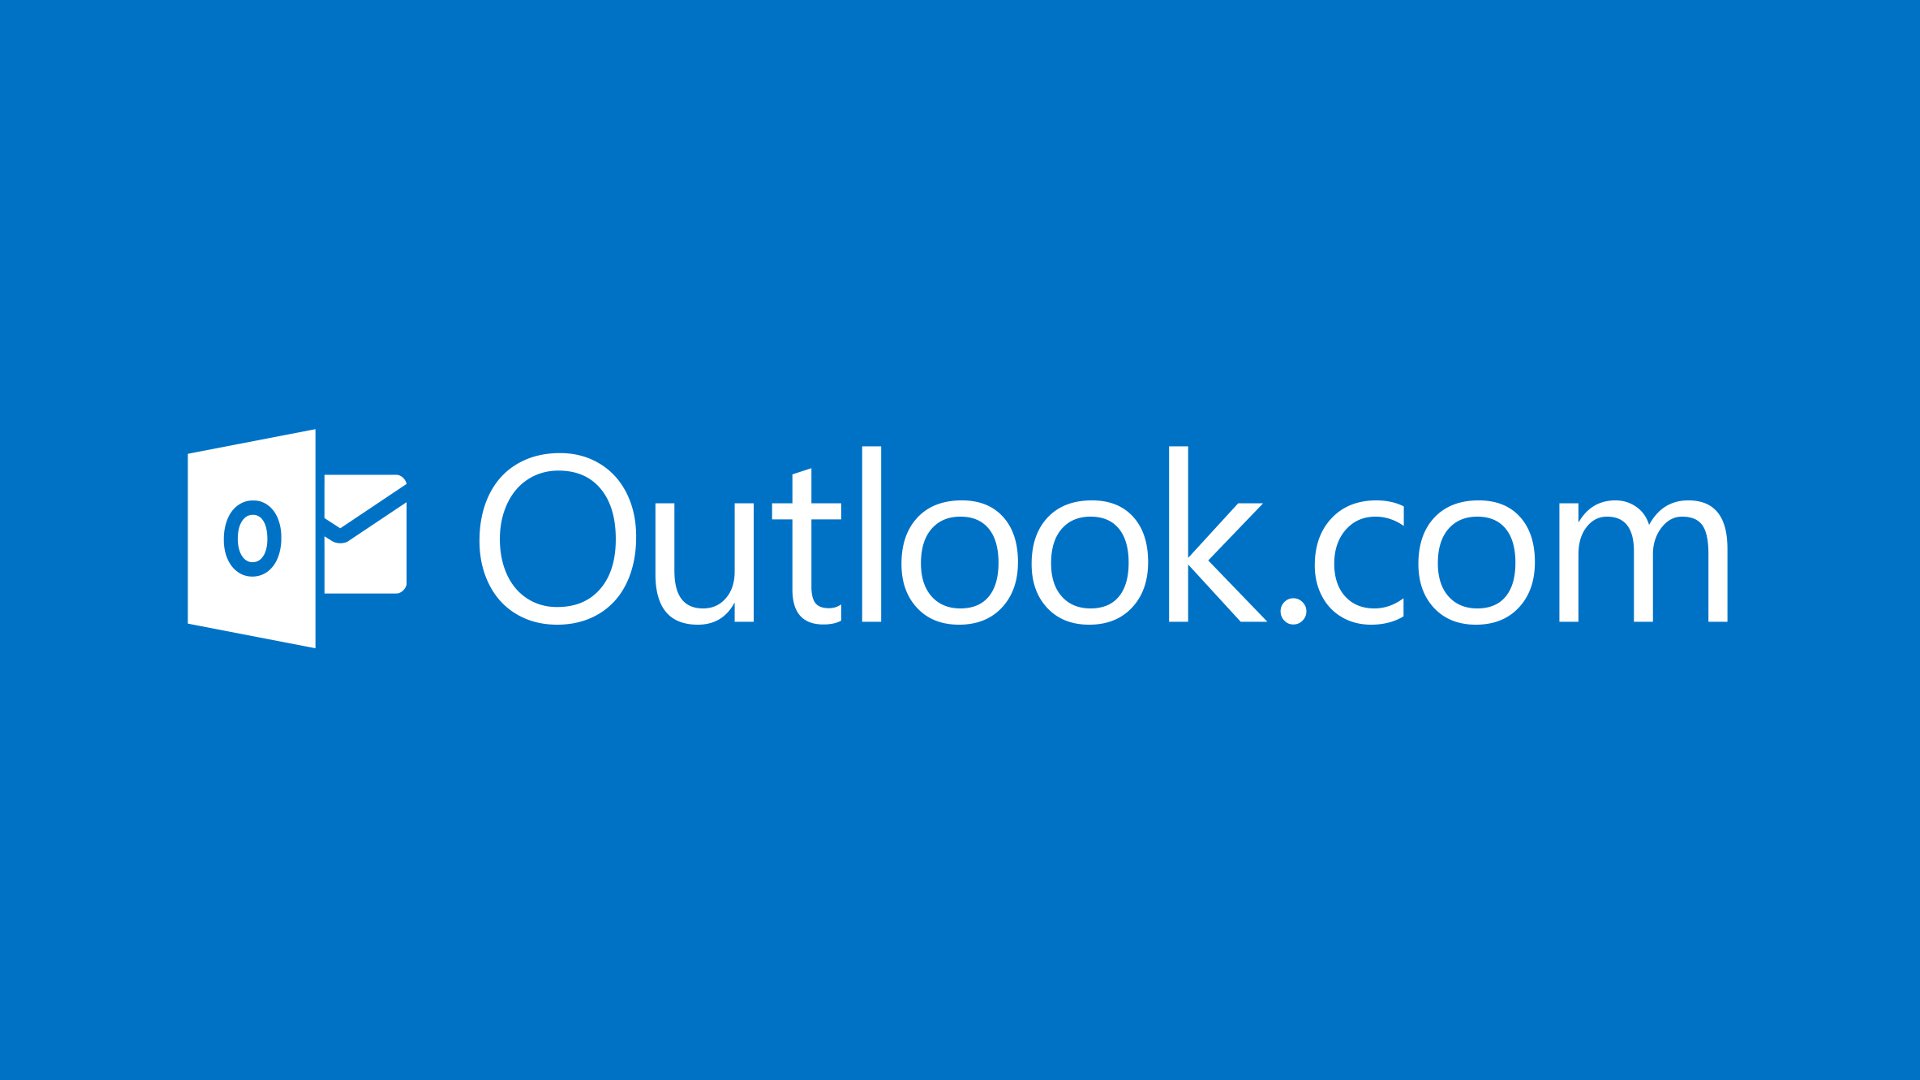 Облачная почта Microsoft Outlookcom объединяет все почтовые службы корпорации Майкрософт, а также сервисы OneDrive, Office WebApp, Skype